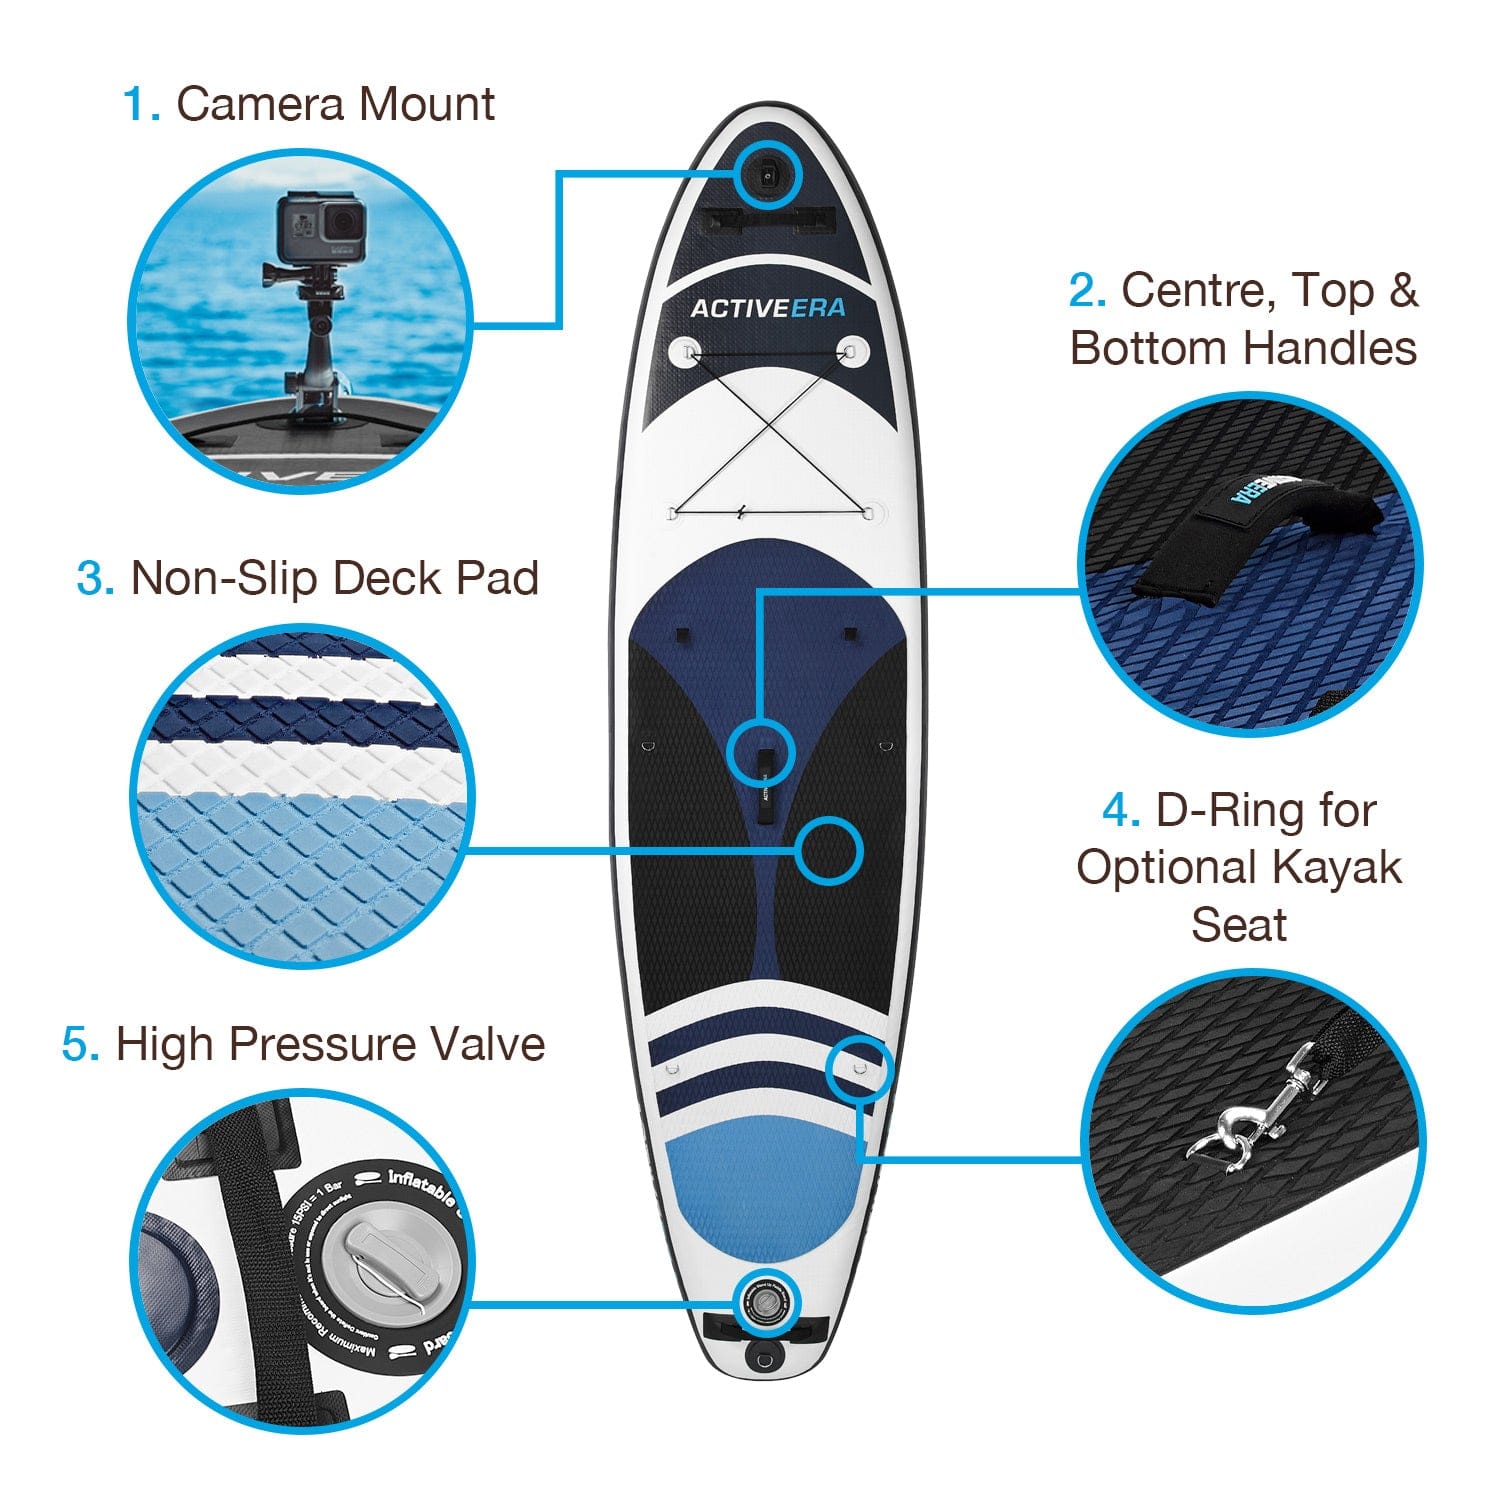 Tabla de paddle surf hinchable 2 en 1 y conversión de kayak